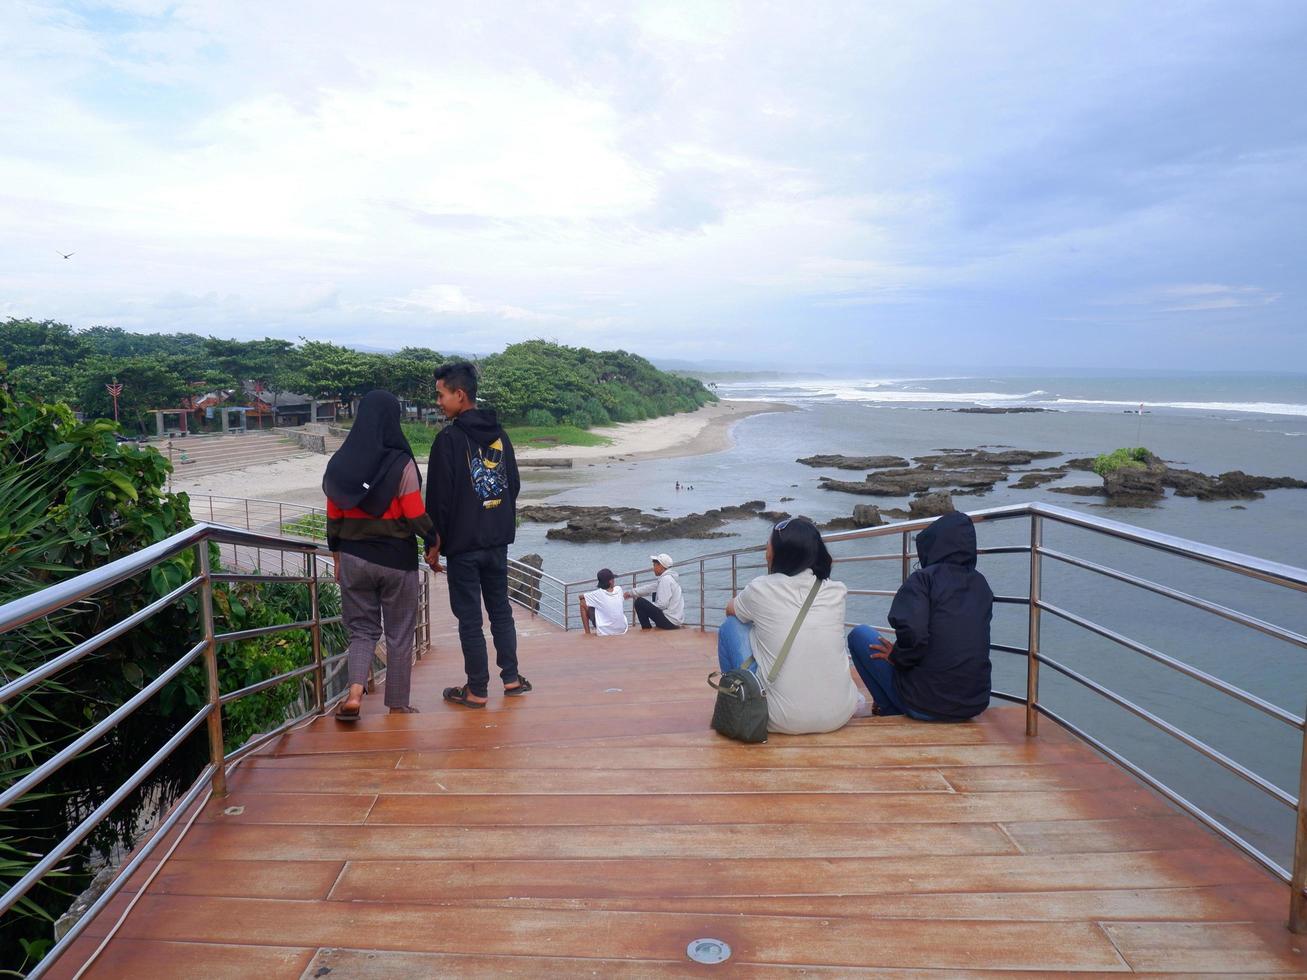 garut, indonesia, diciembre 12,2022 personas sentadas o recreativas en la carretera o puente o escaleras de madera en la playa, vista del puente de la playa en sayang heulang indonesia foto